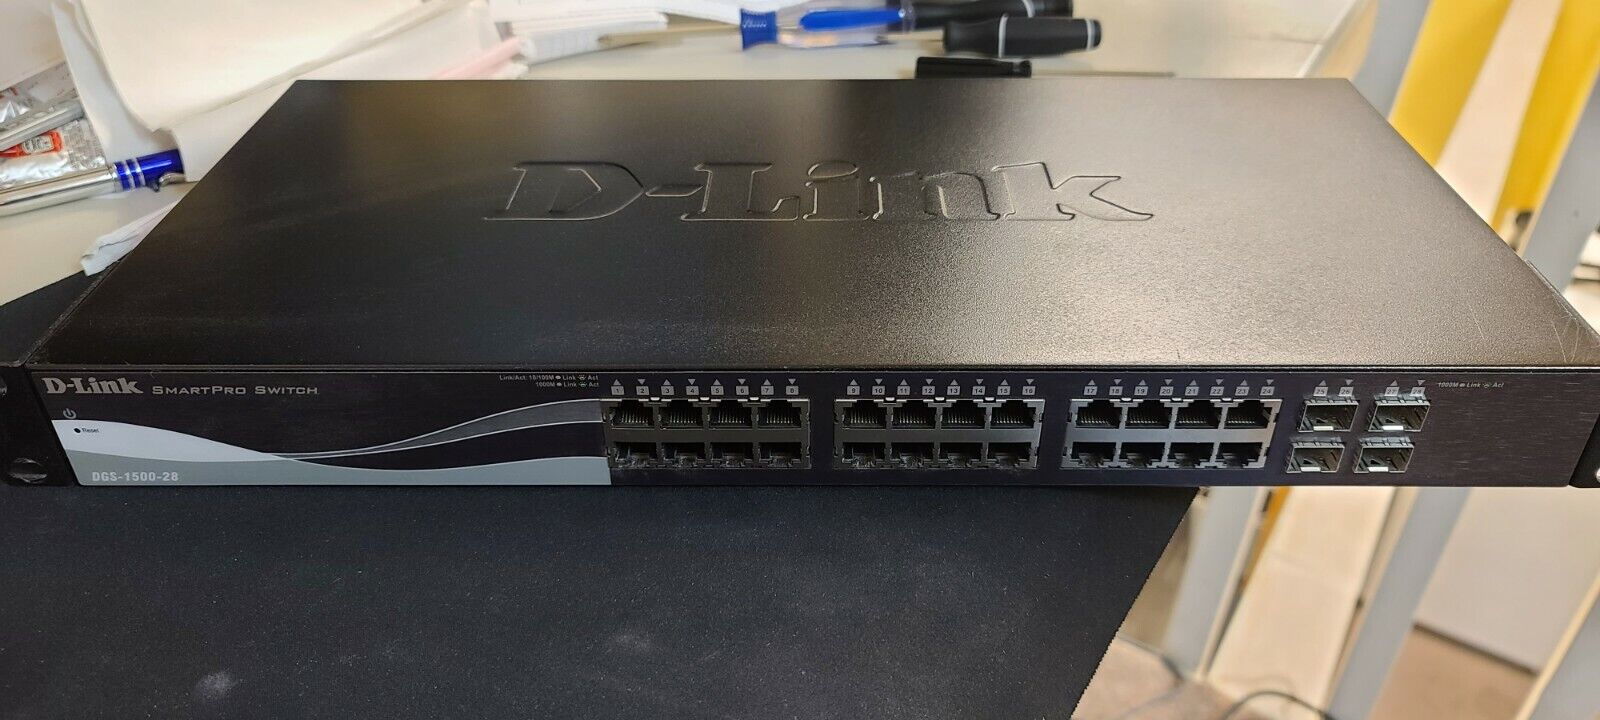 D-Link SmartPro DGS-1500-28 Gigabit Ethernet Network Switch - Used - Tested